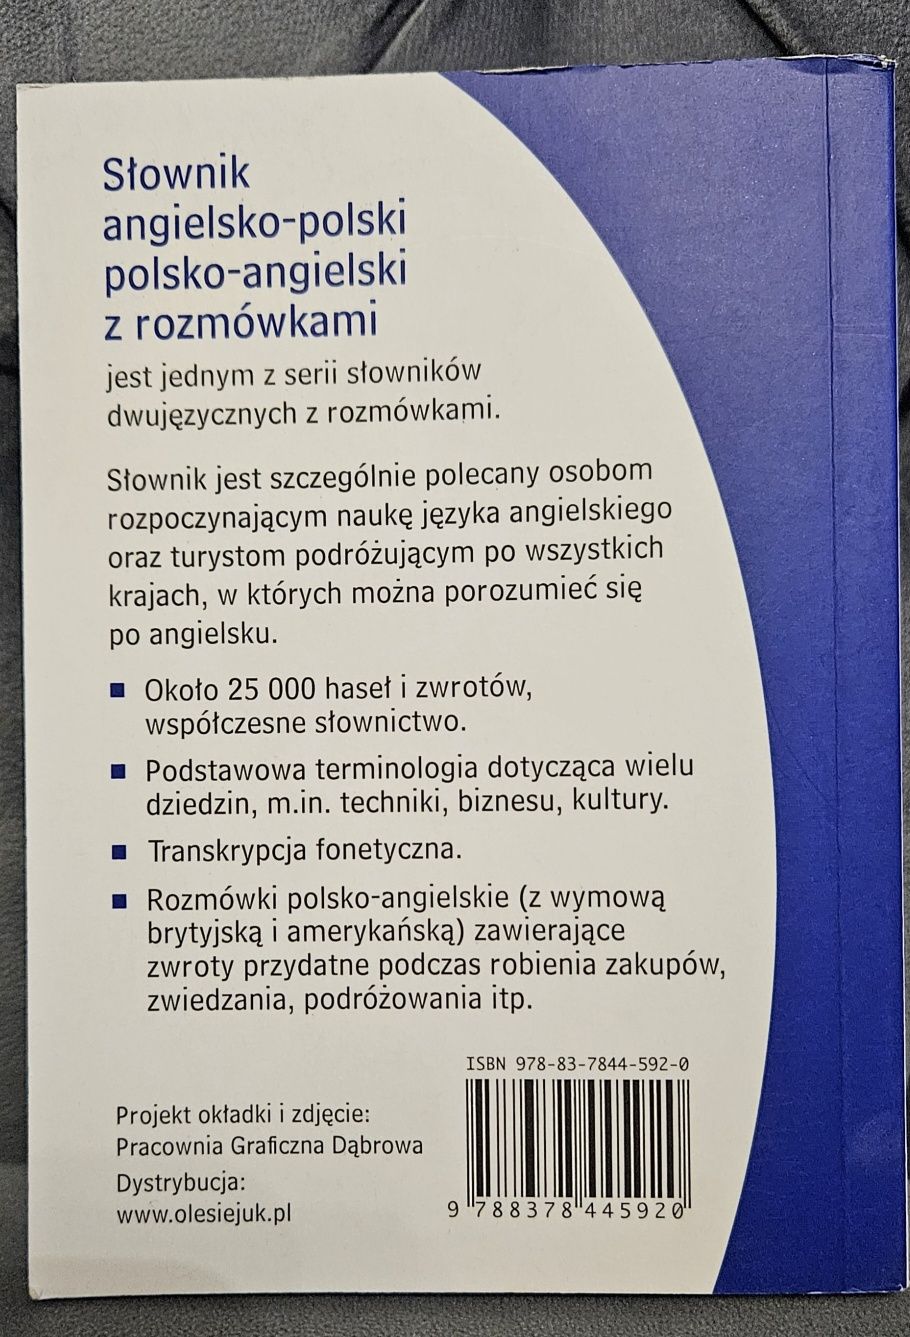 Słownik angielsko-polski polsko-angielski. Polecam i zapraszam !!!